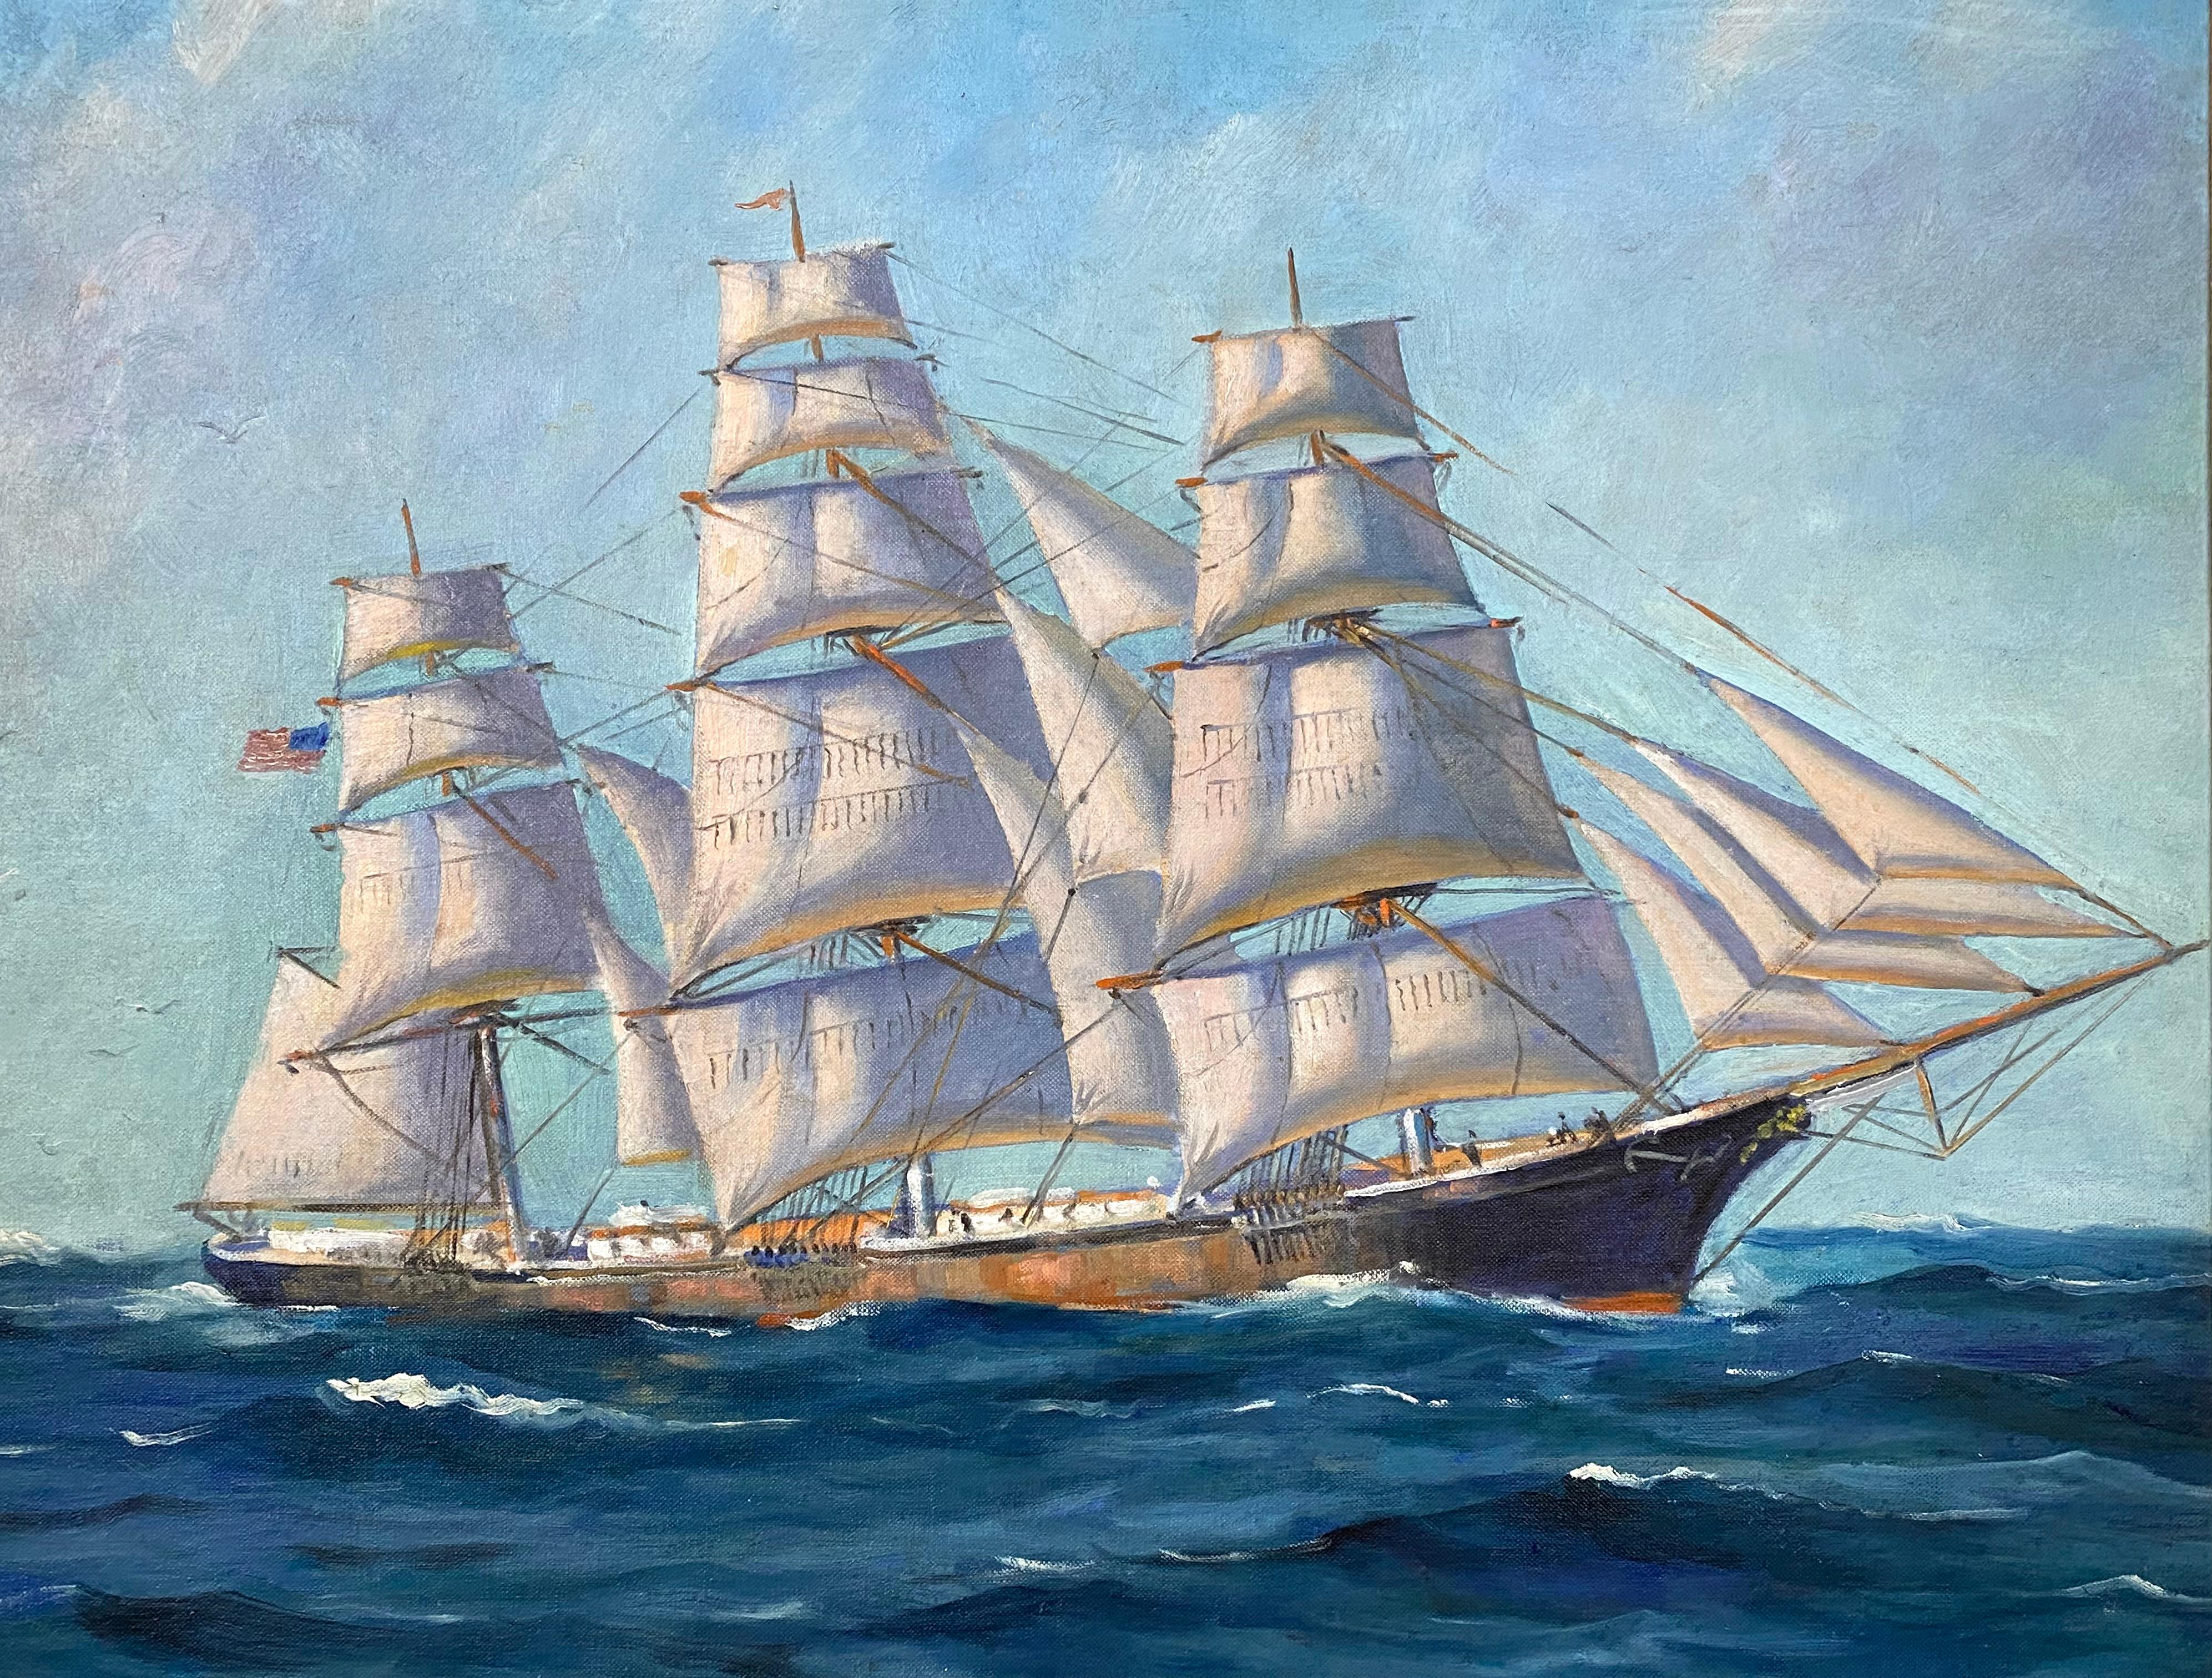 Clipper unter vollem Segel – Painting von Sam Sargent